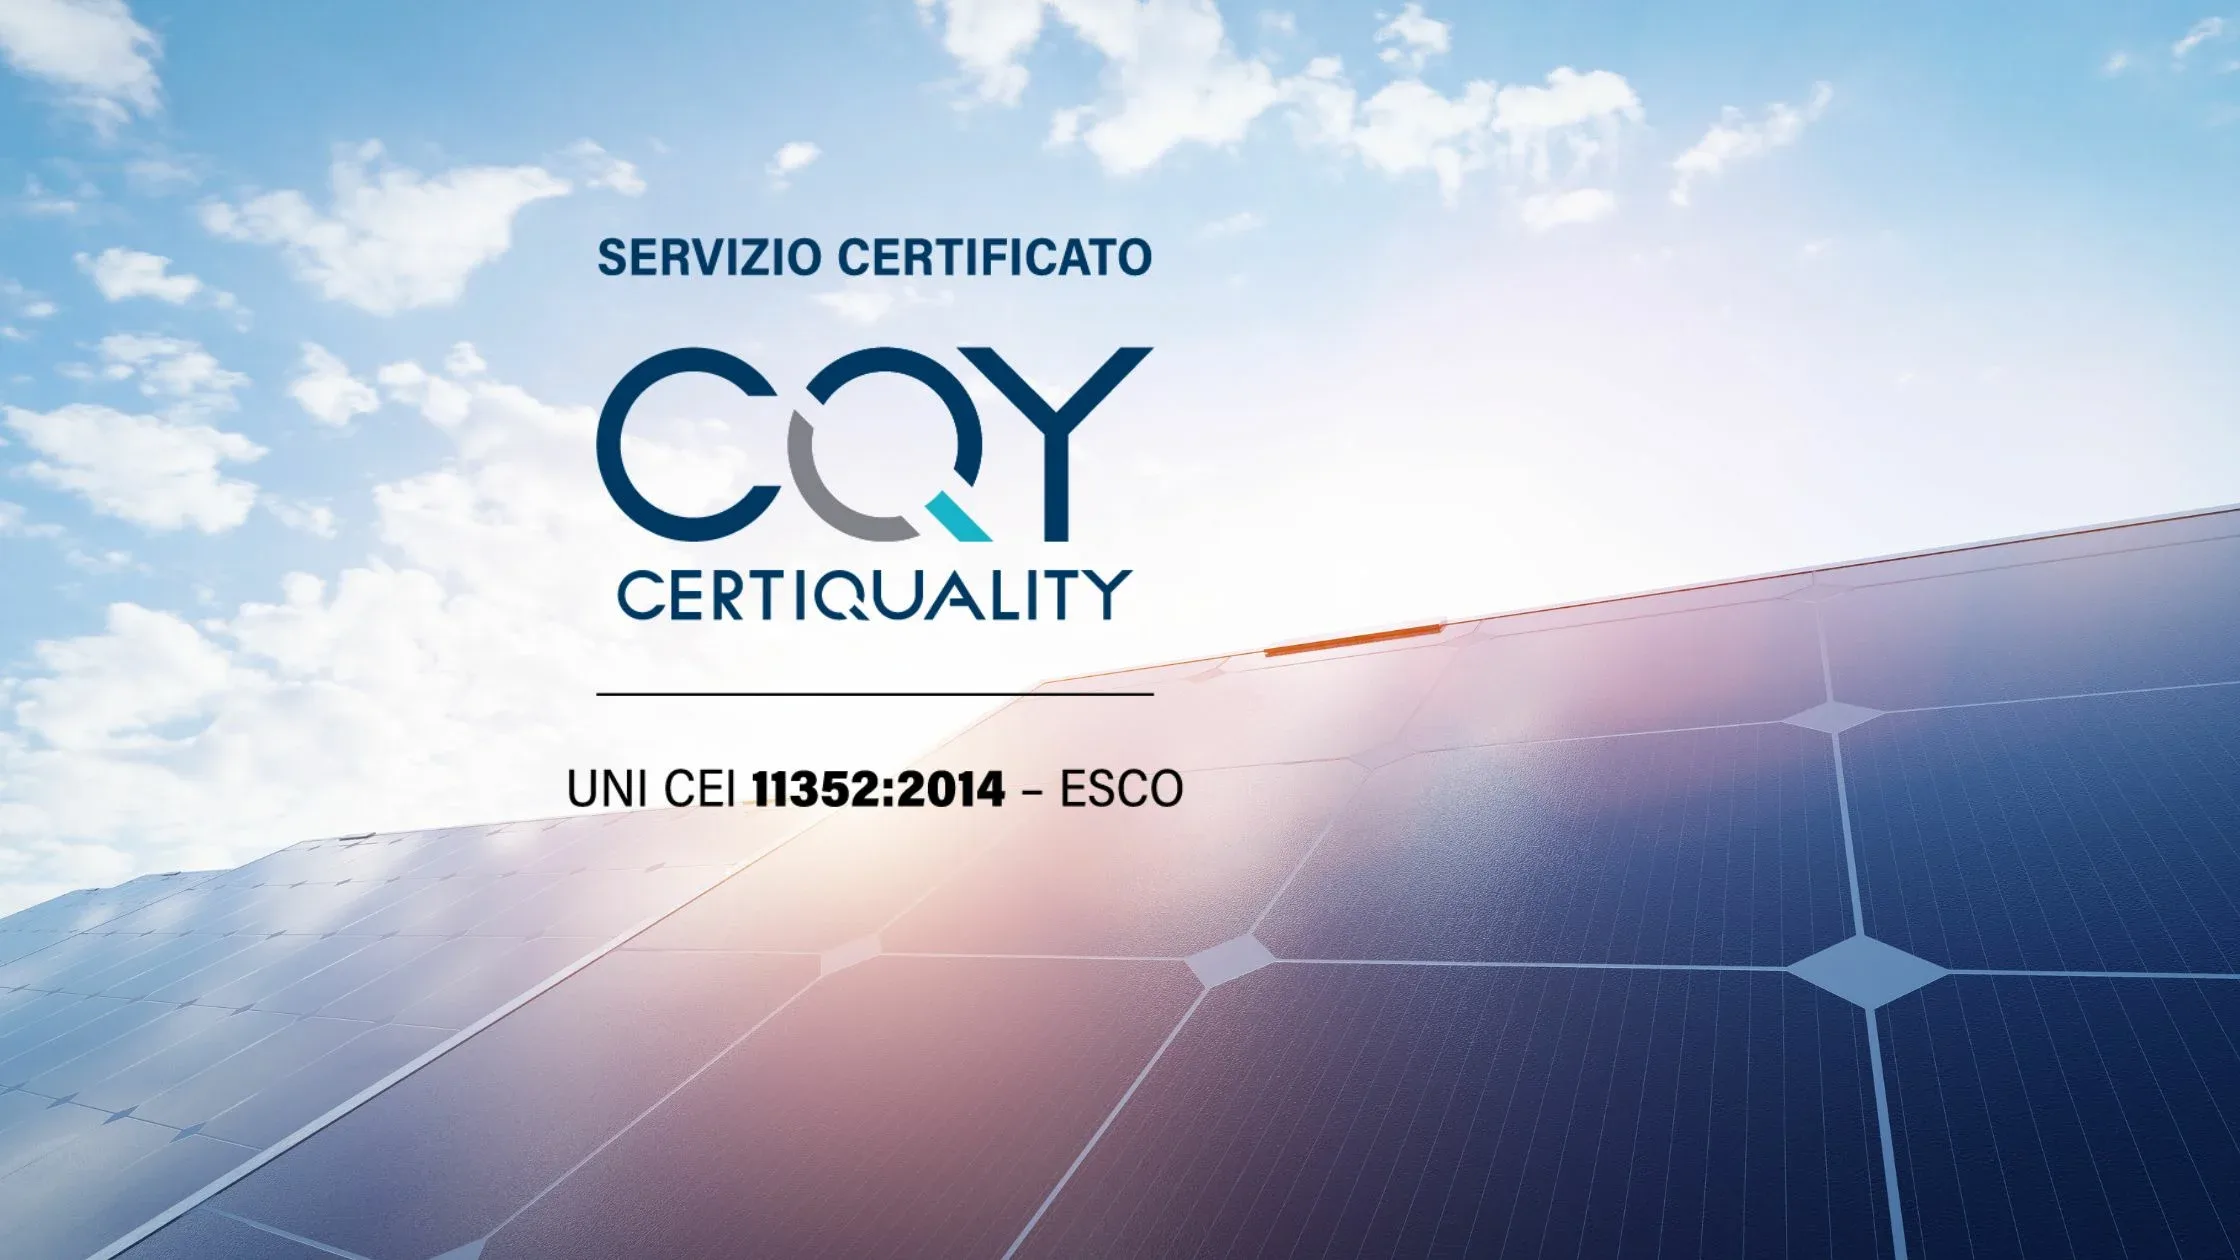 servizio certificato cqy